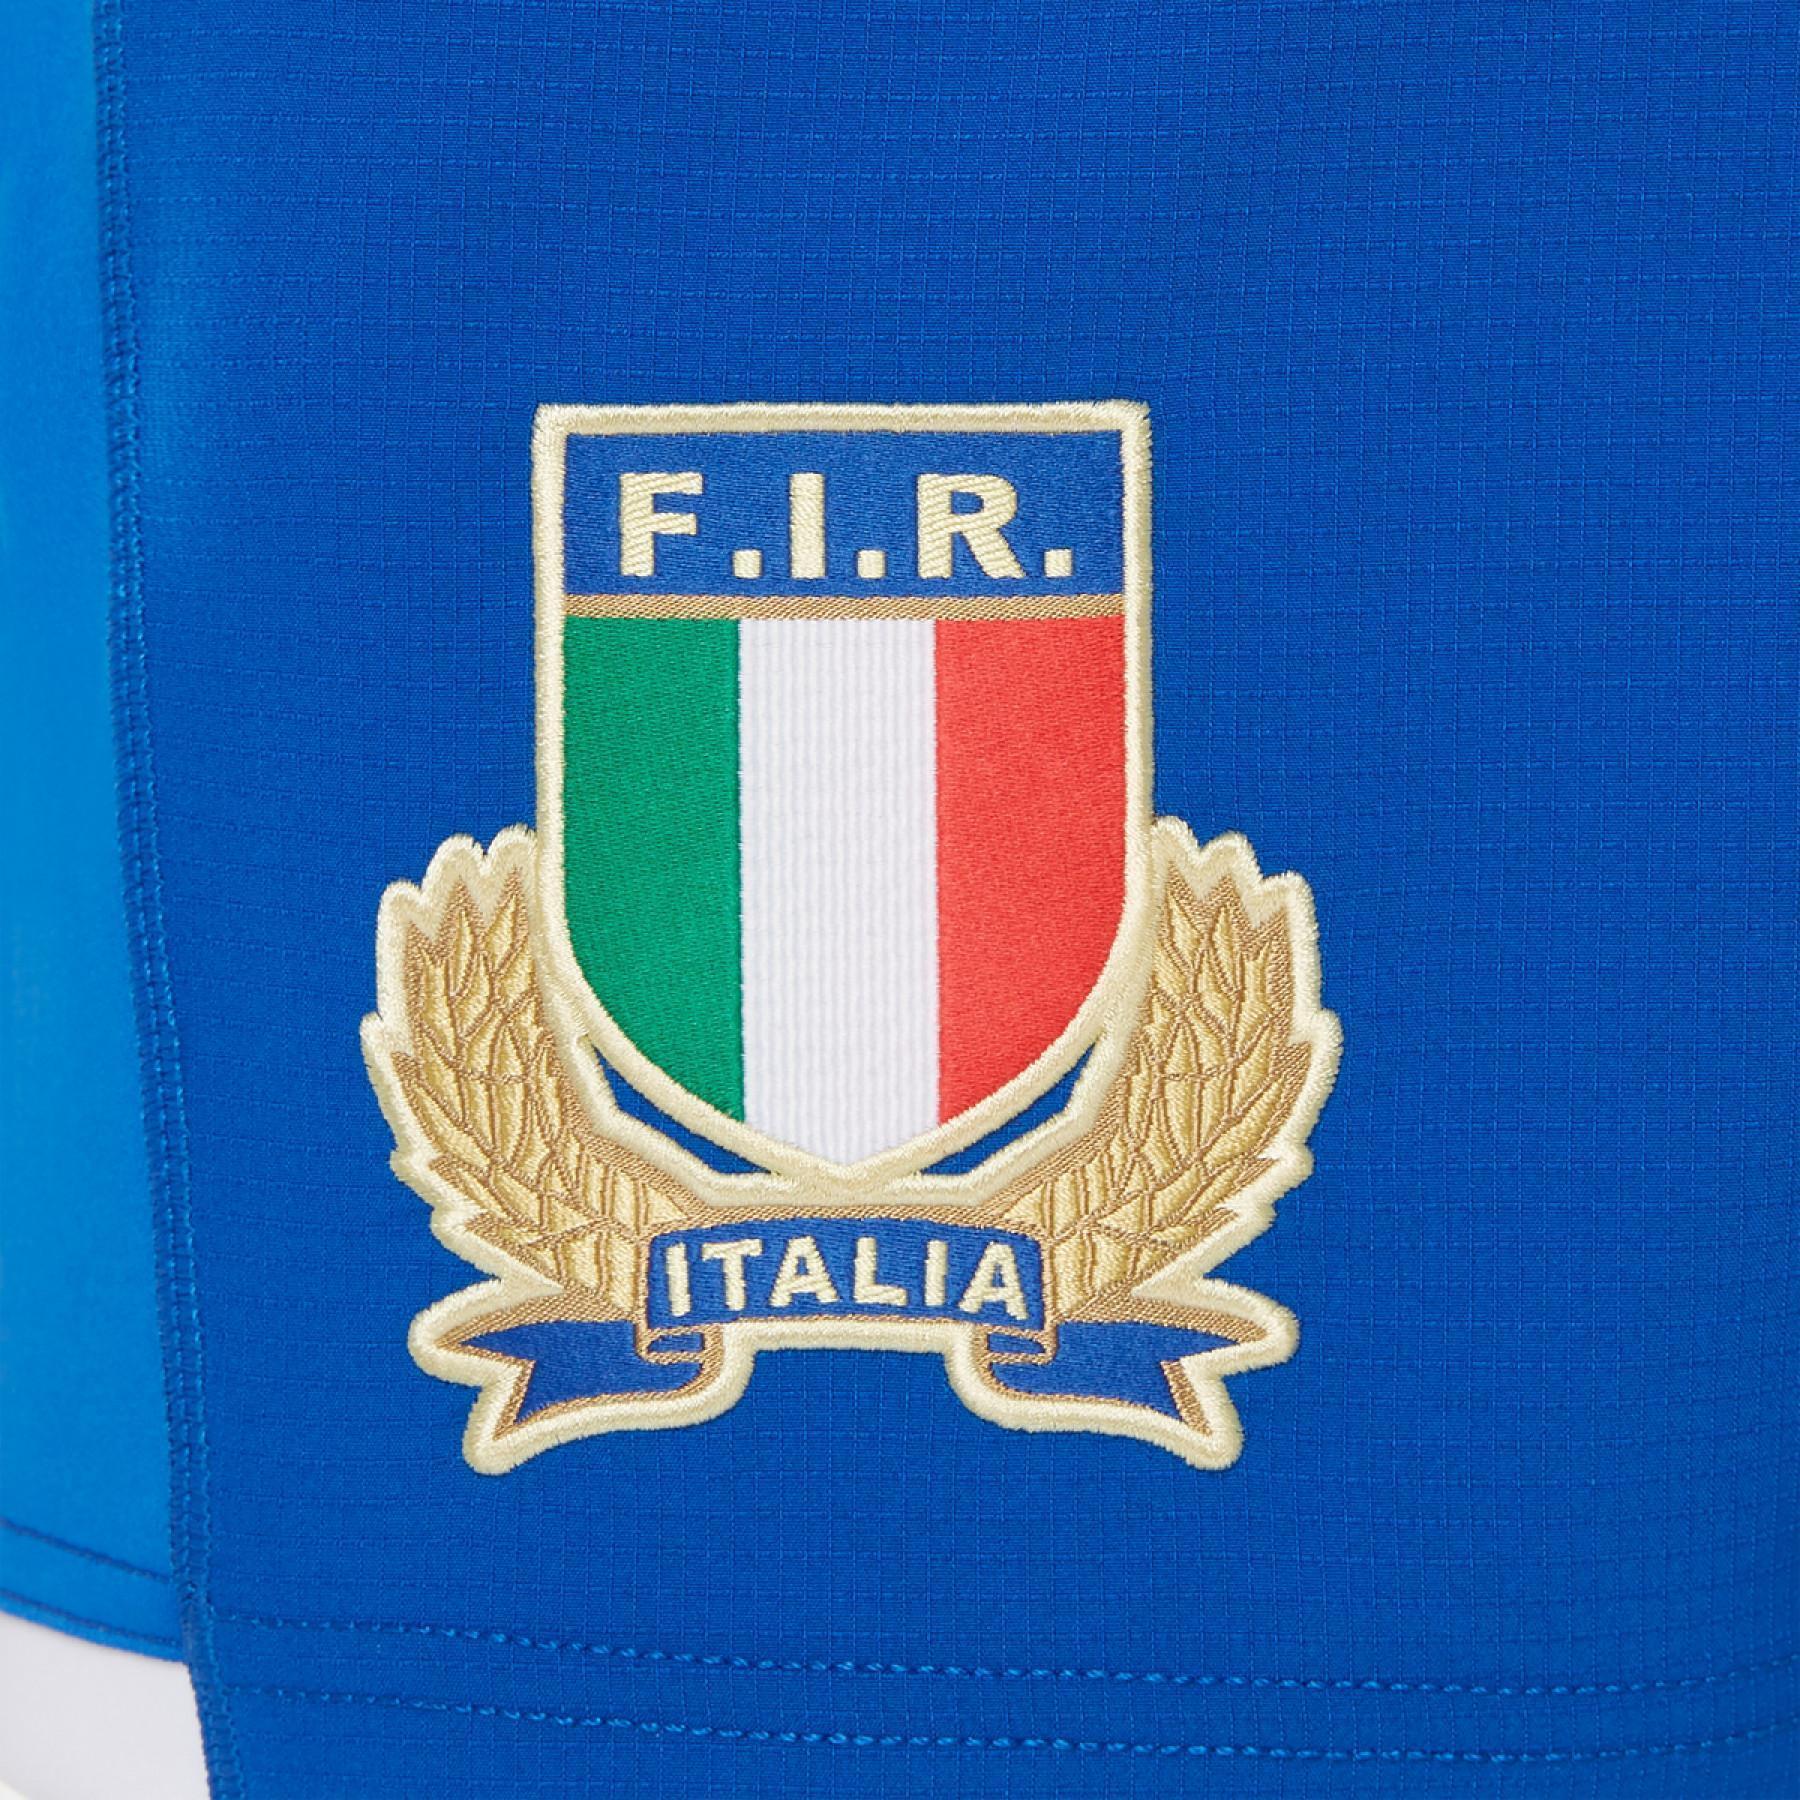 Pantalones cortos de competición al aire libre Italie rugby 2020/21